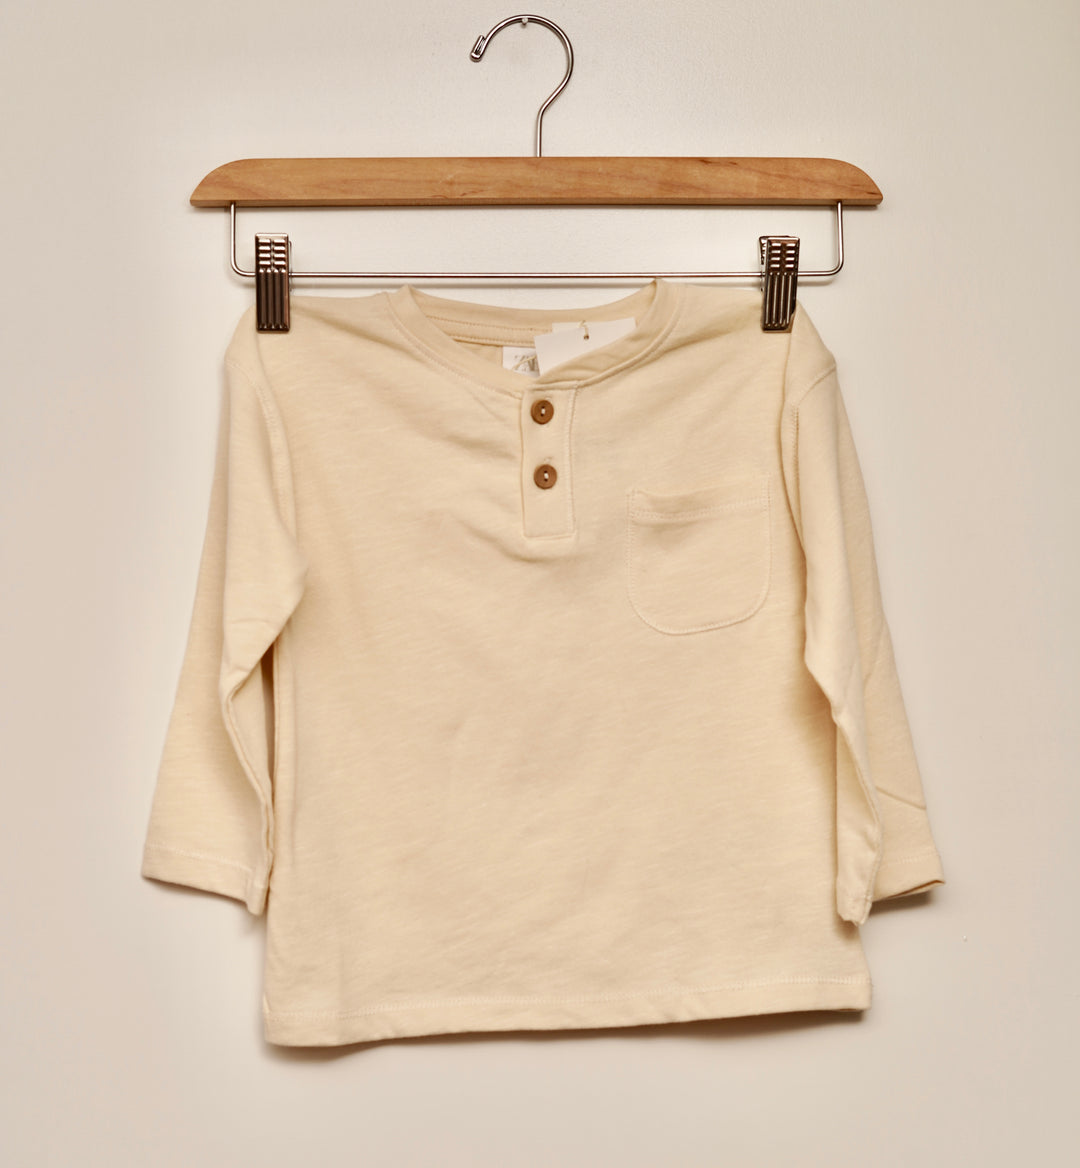 Zara Long Sleeve Shirt, 12-18 Months